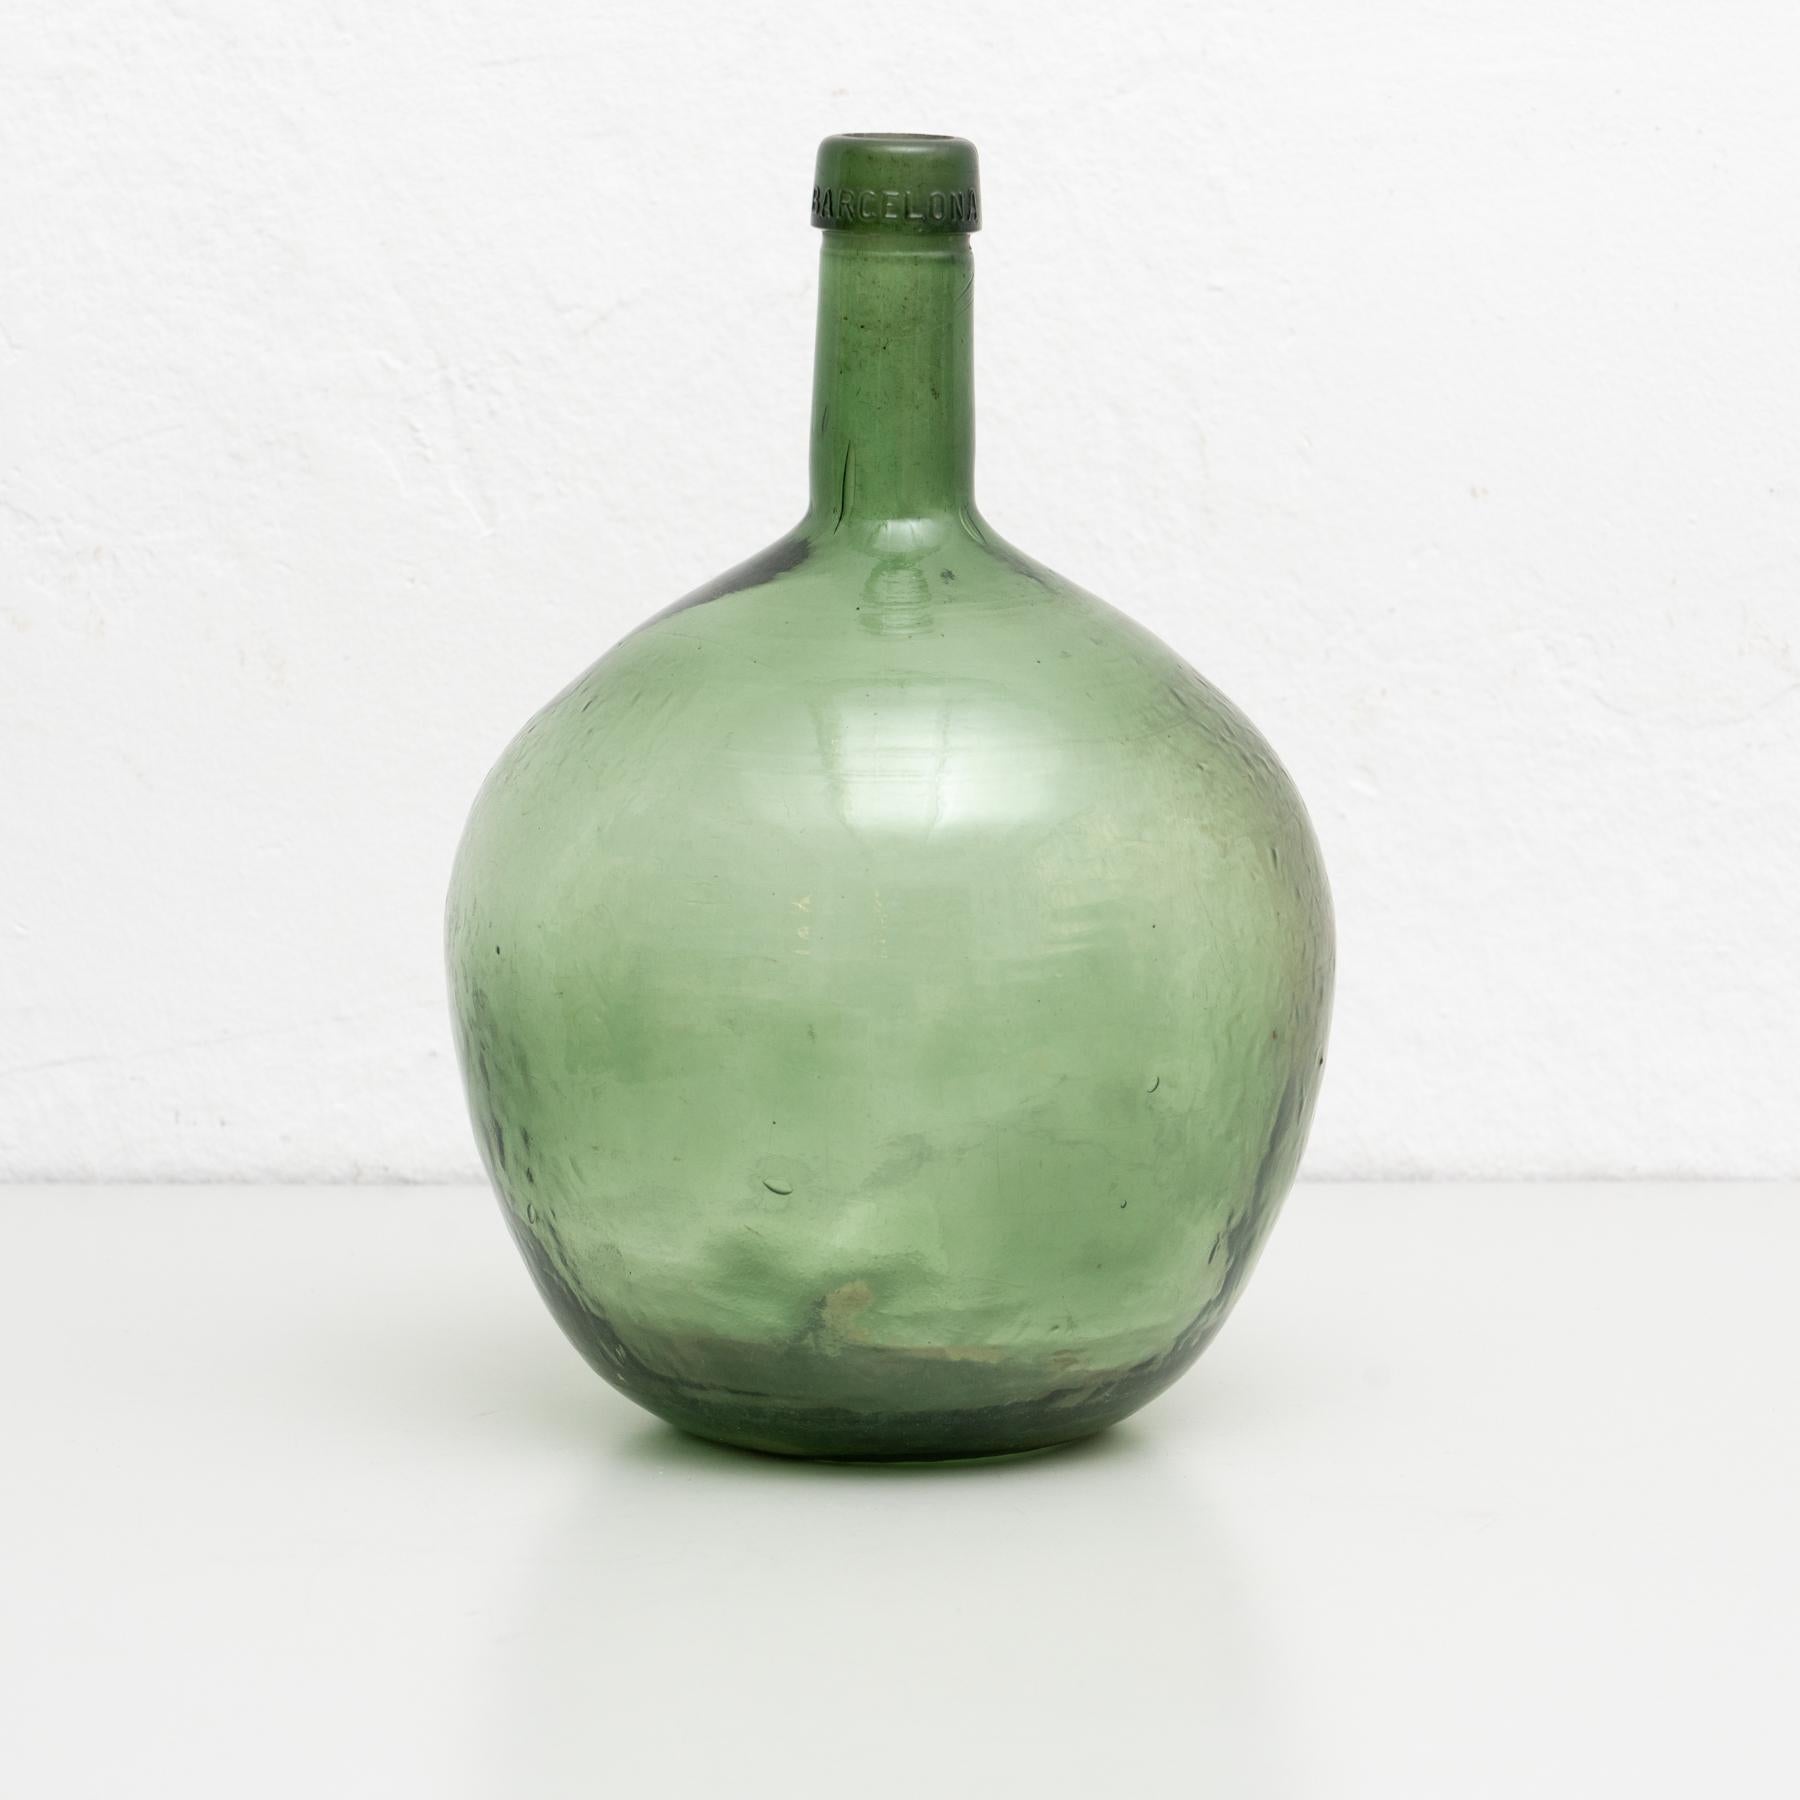 Antike Demijohn-Glasflasche aus Barcelona.
Hergestellt aus Glas.

Originaler Zustand mit geringen alters- und gebrauchsbedingten Abnutzungserscheinungen, die eine schöne Patina erhalten haben.